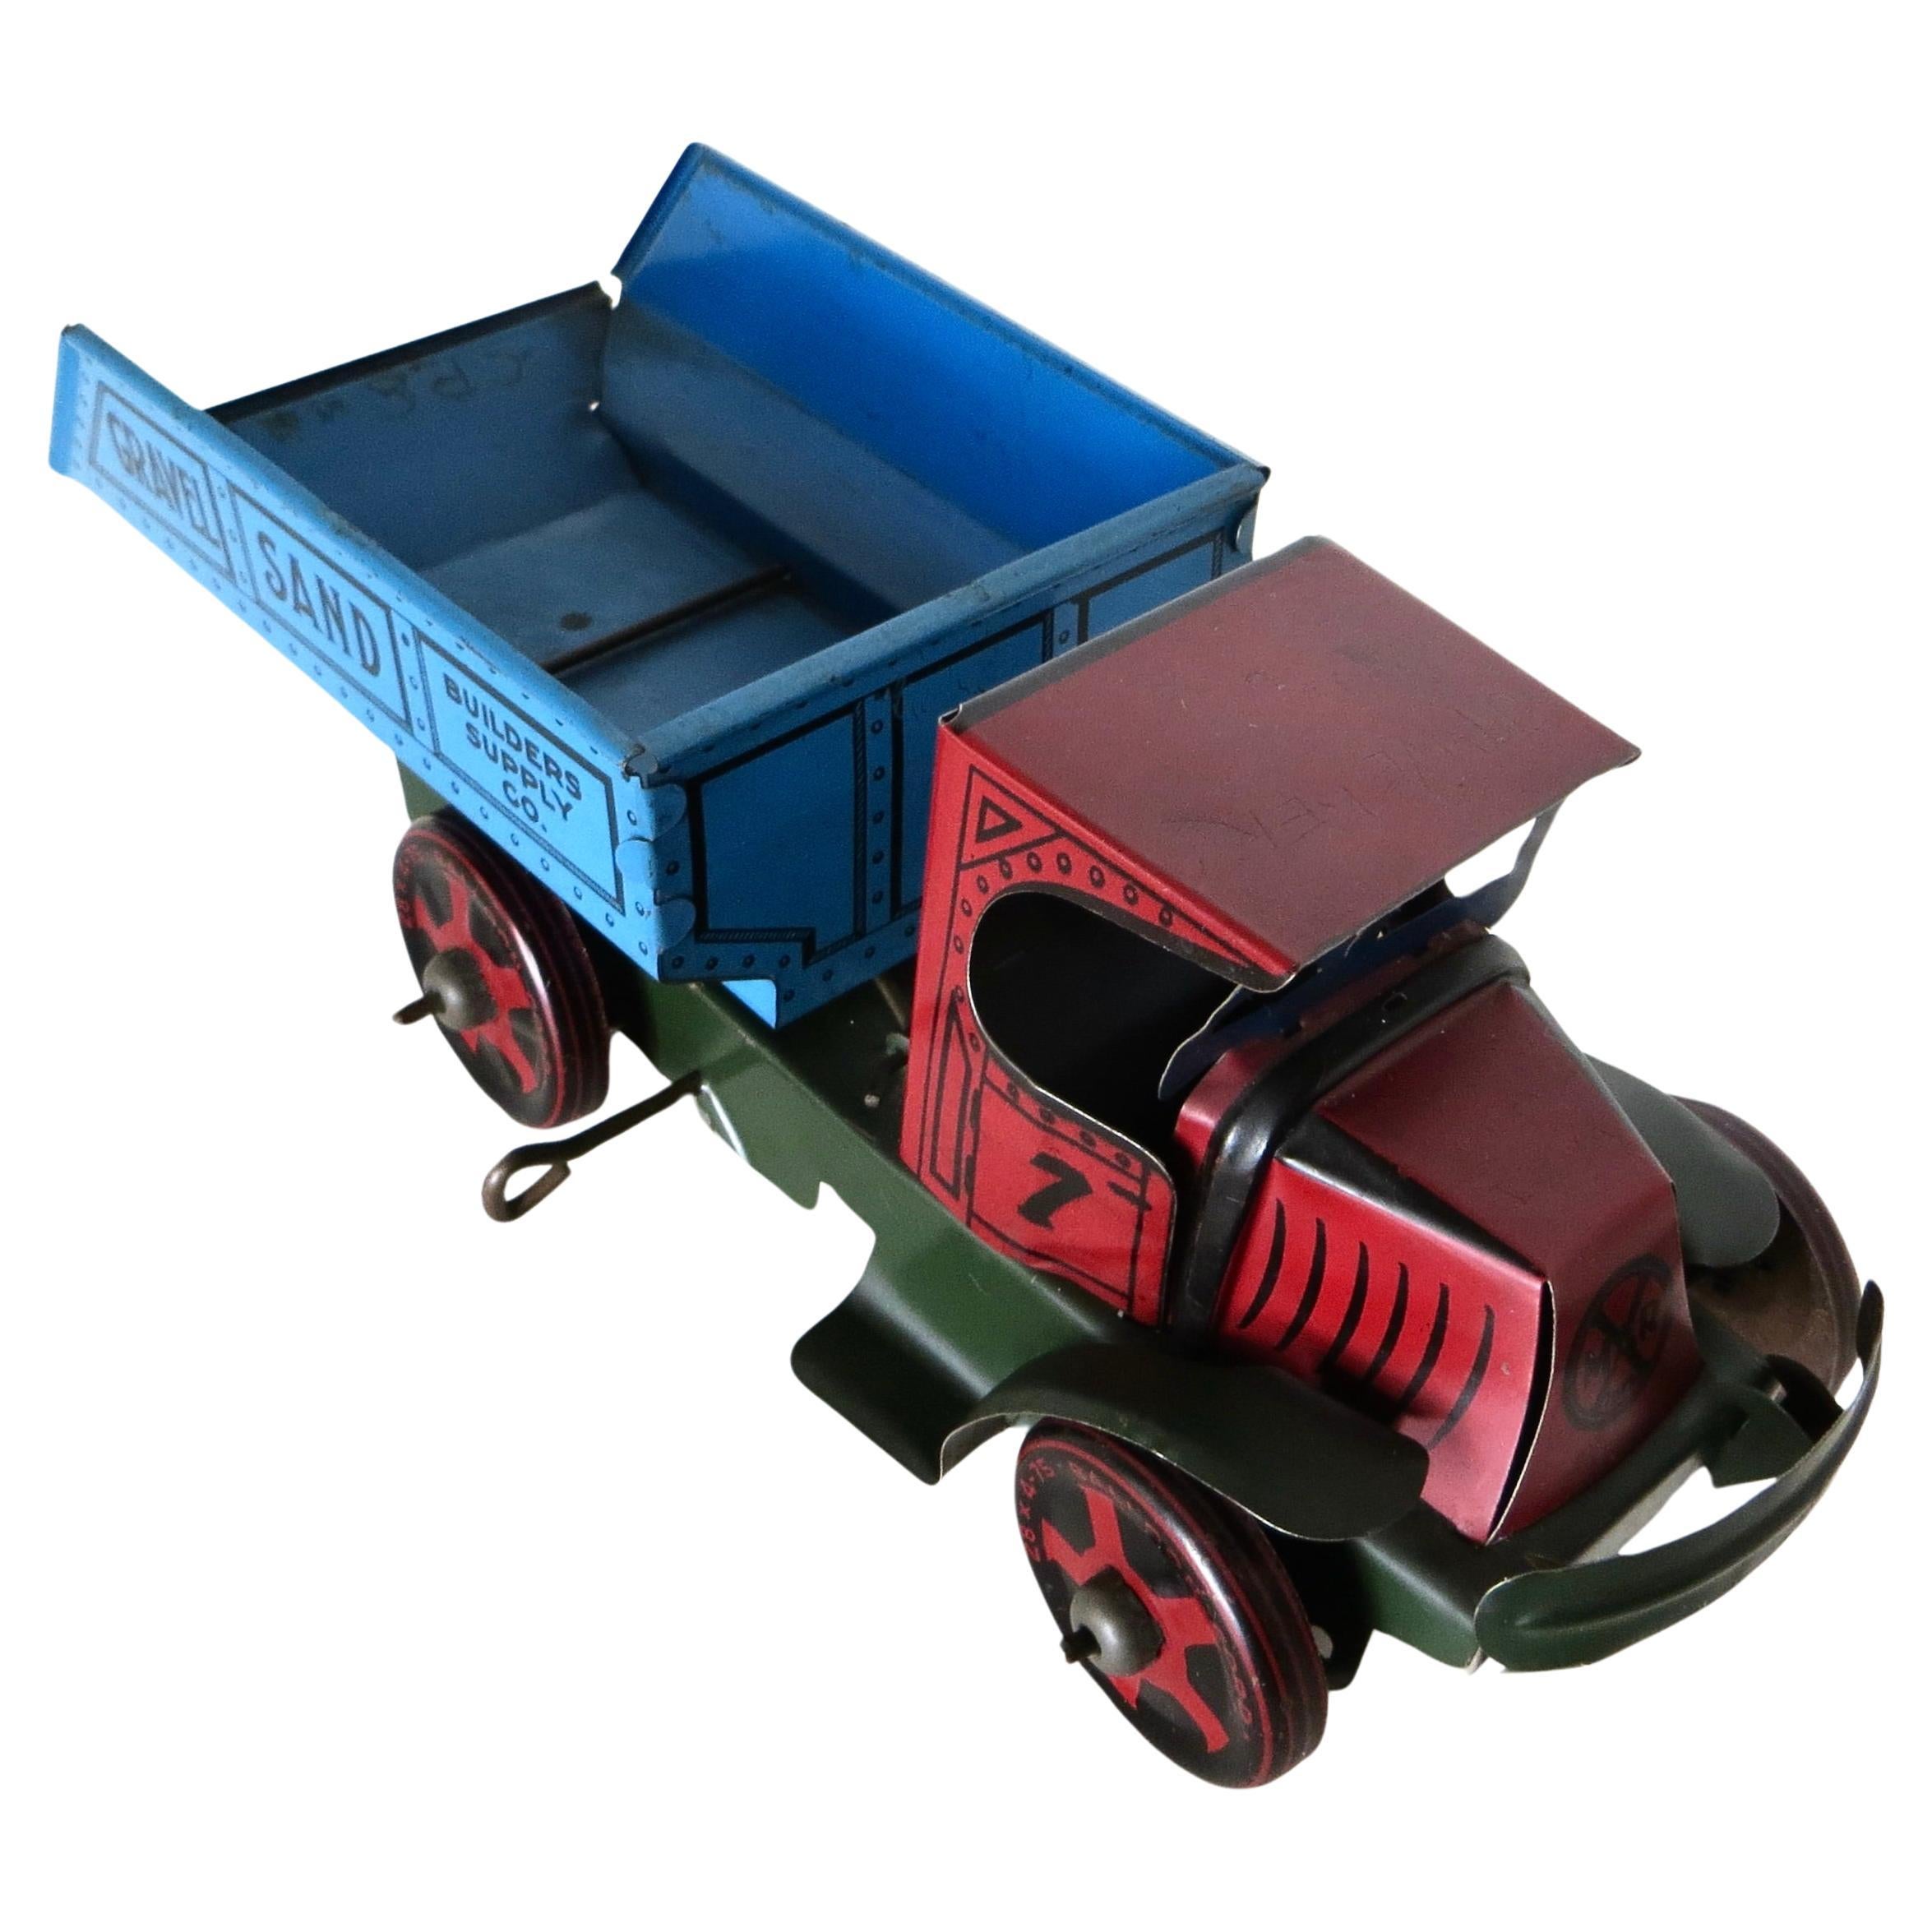 Vintage Spielzeug Wind-Up Dump Truck von The Marx Toy Company, N.Y. Amerikanisch, um 1930